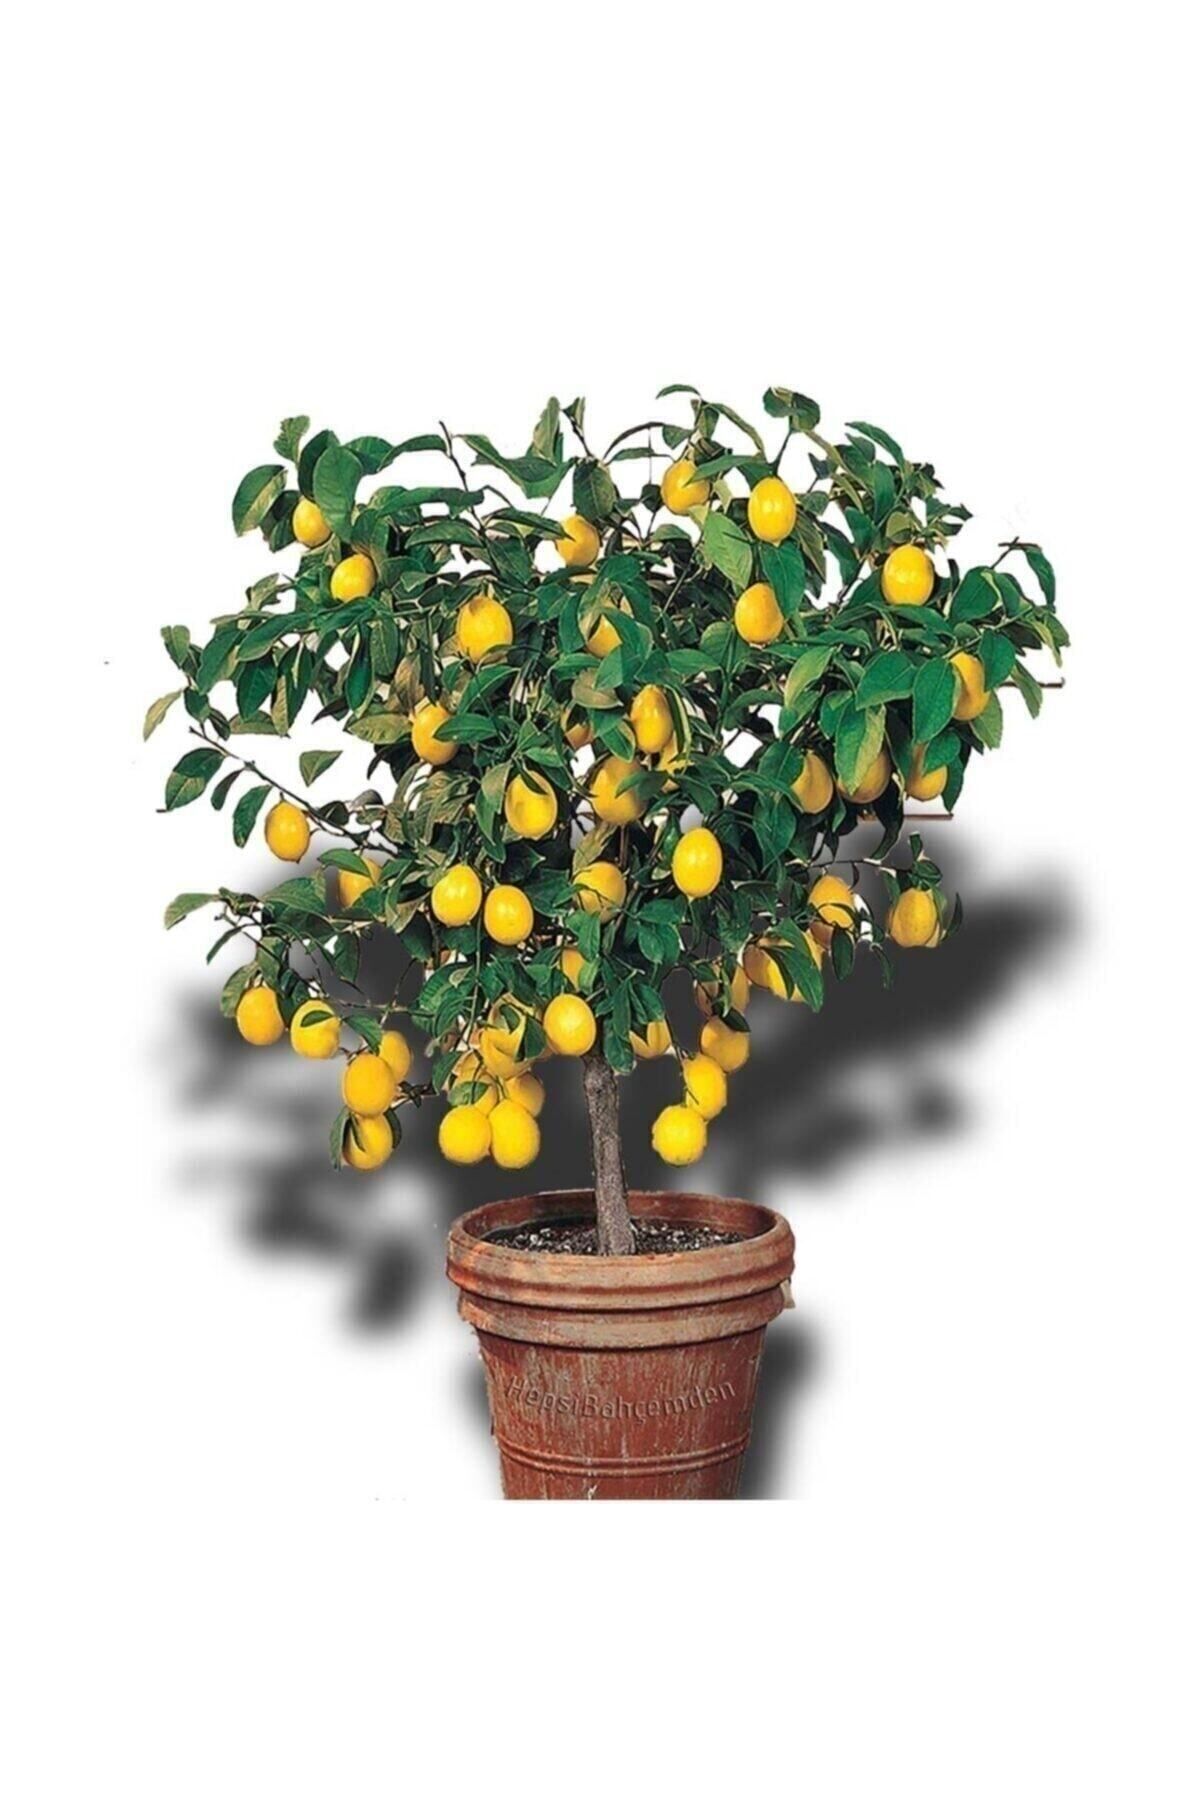 körfezgardens Limon Ağacı Fidanı Saksılı Bodur Yediveren Mayer